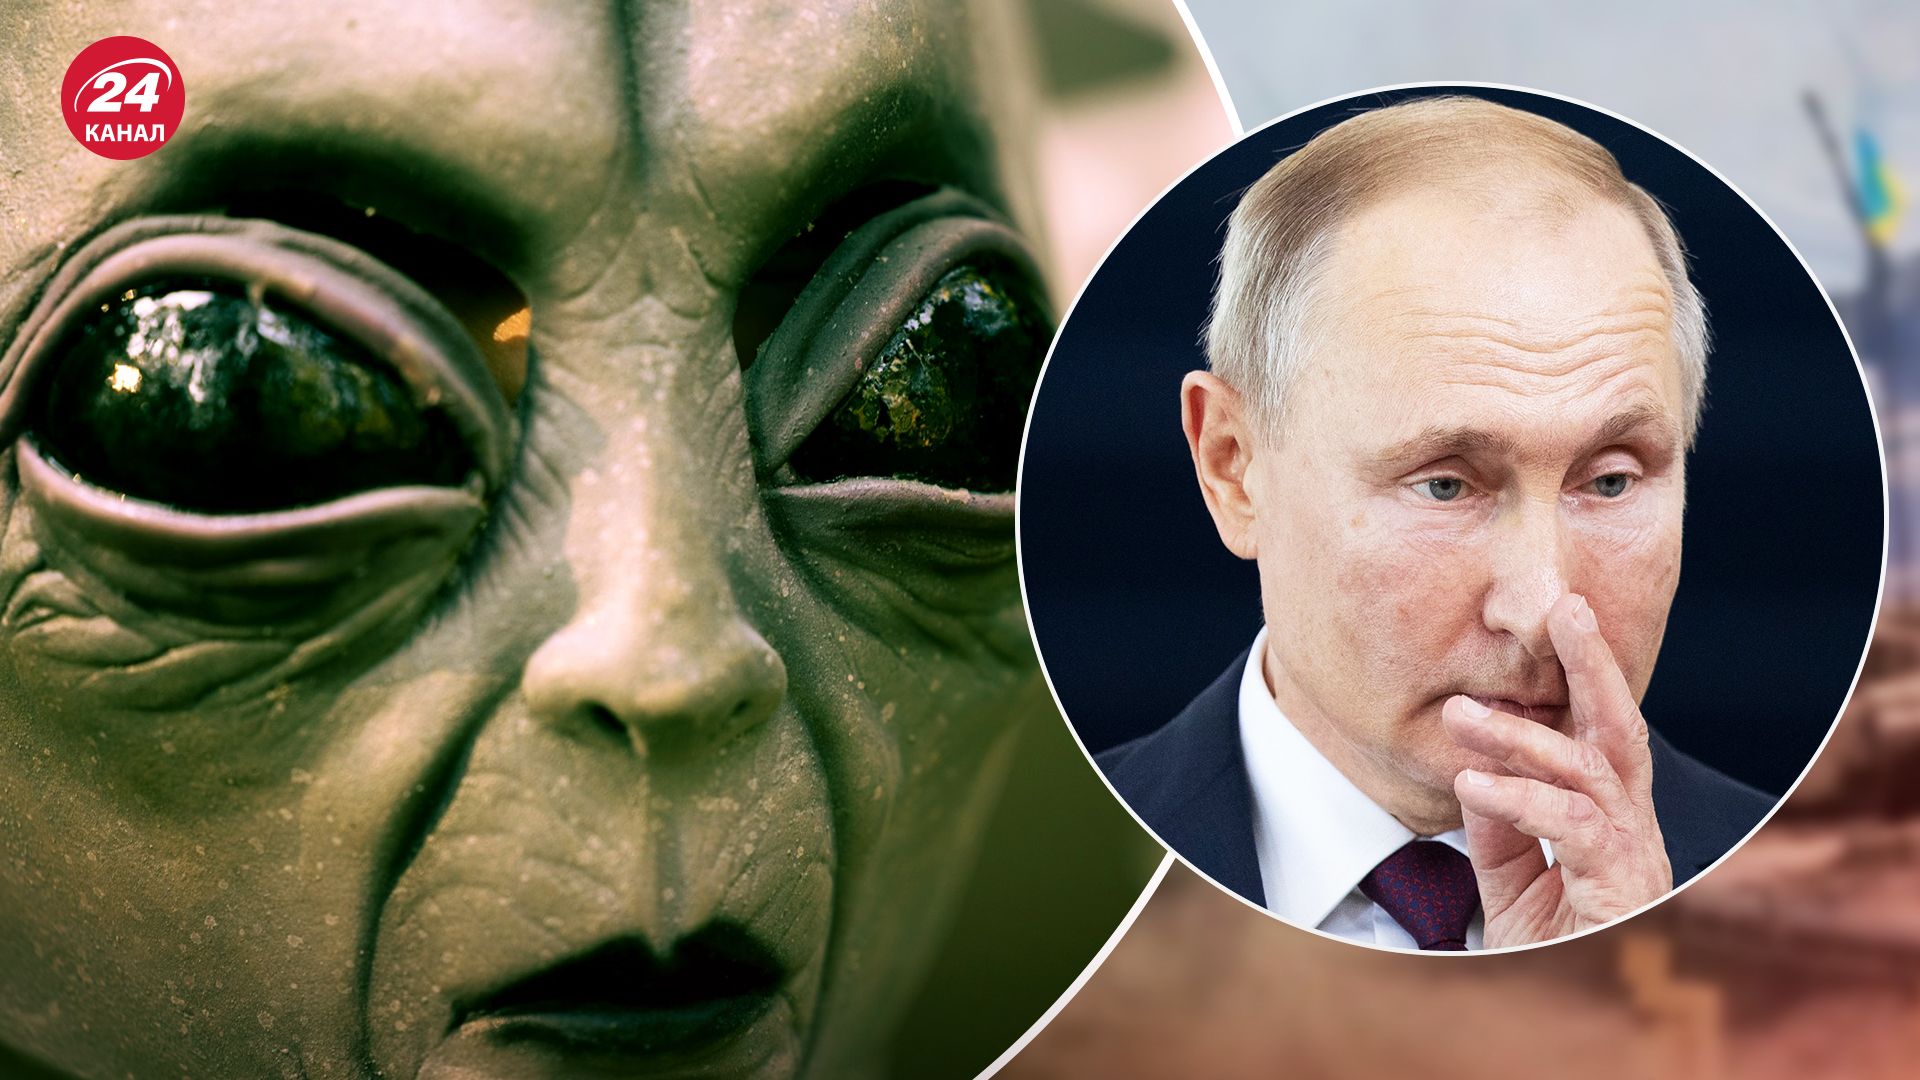 Росіяни готові повірити в іншопланетян, якщо про це заявить Путін - дані опитування - 24 Канал